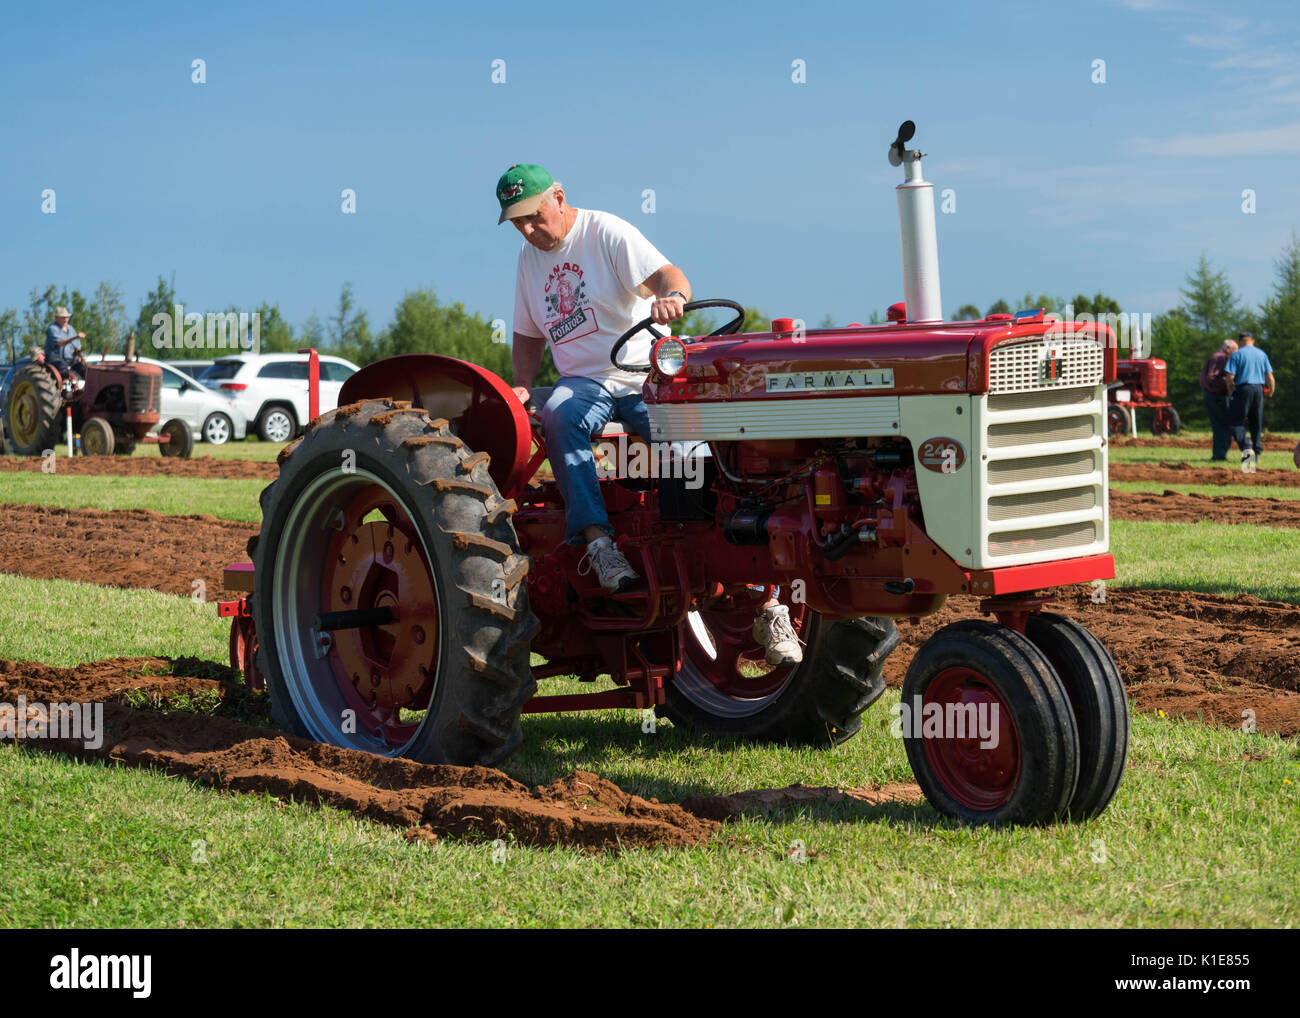 DUNDAS, PRINCE EDWARD ISLAND, Canadá - 25 de agosto: Los competidores amtique arar con tractores en los PEI de arada y Feria Agropecuaria el 25 de agosto, 201 Foto de stock